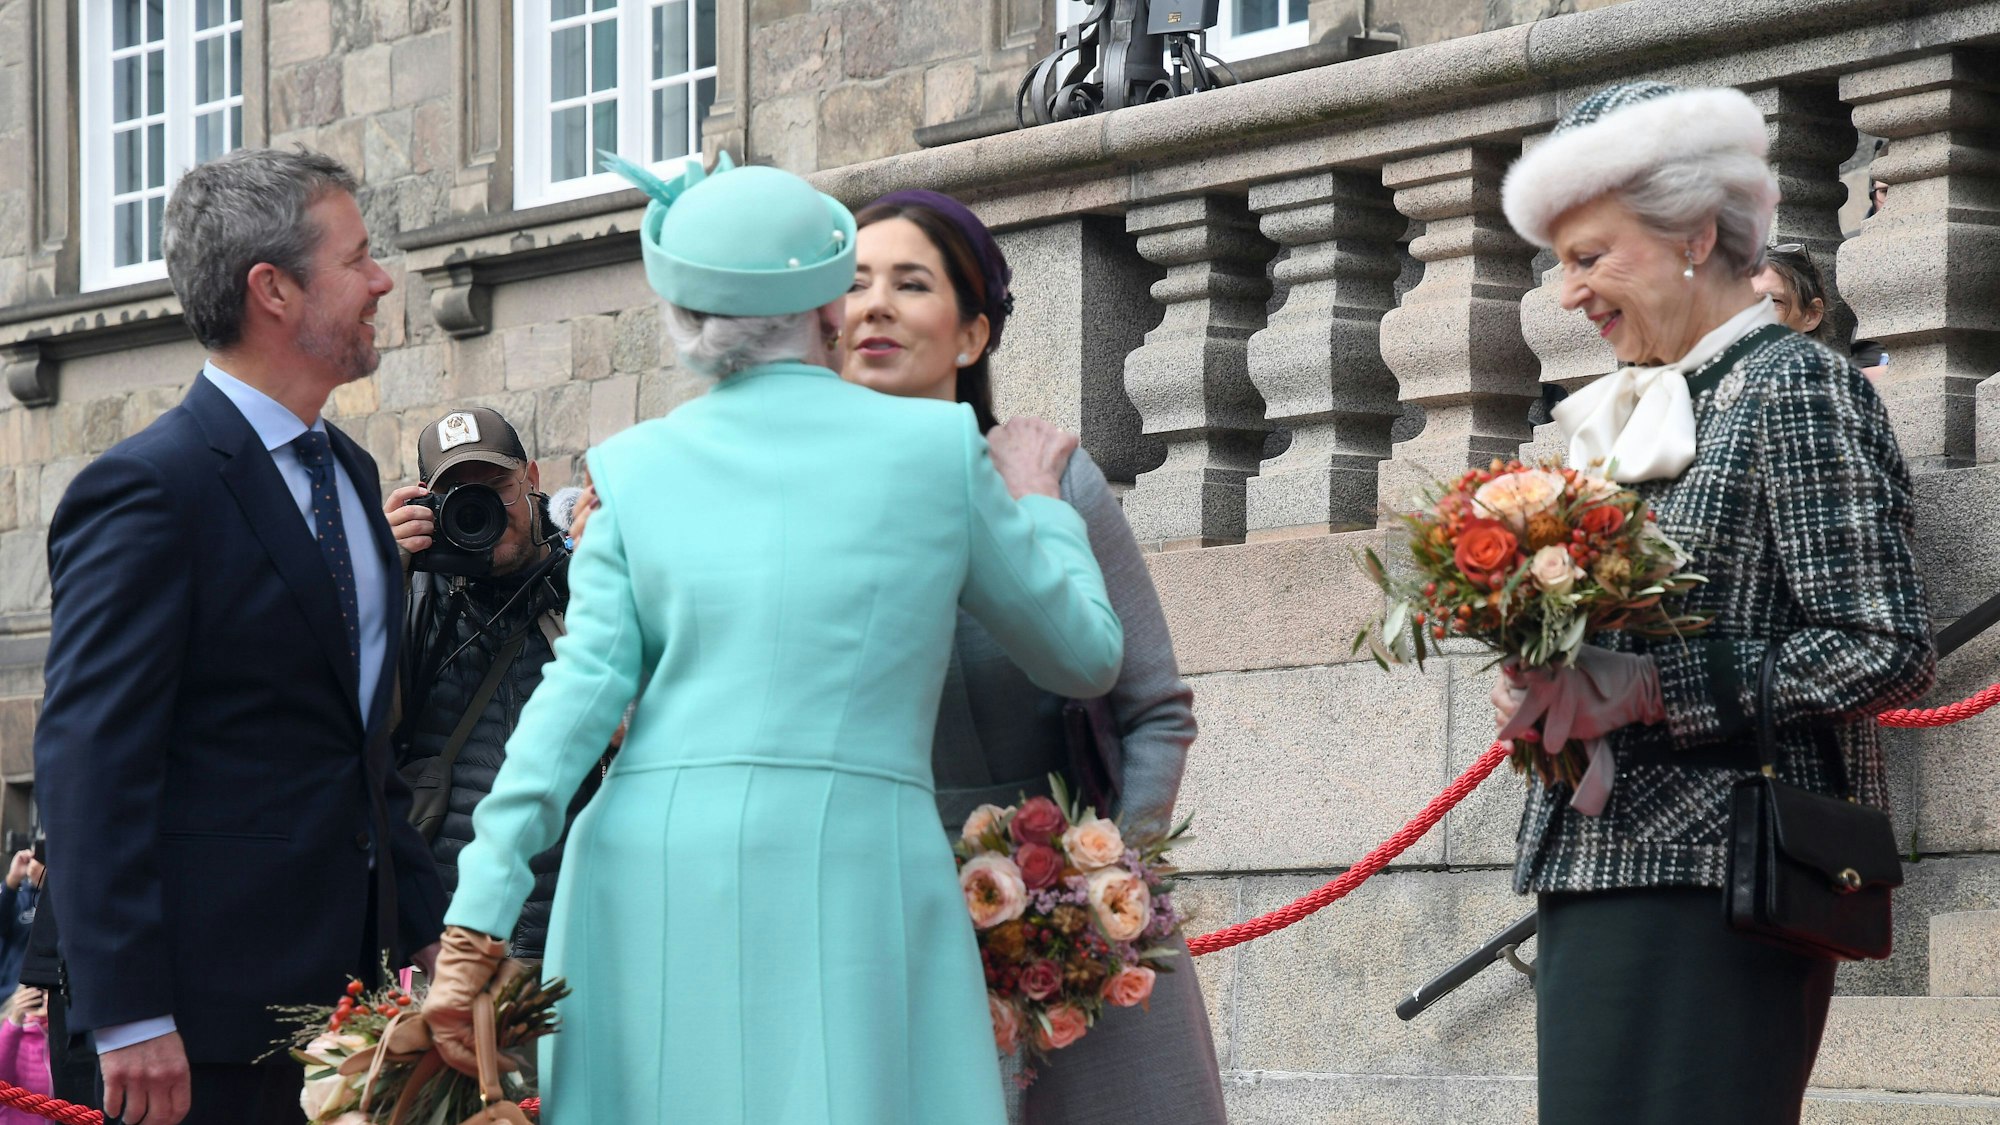 Königin Margrethe II., Kronprinz Frederik und Kronprinzessin Mary und Benedikte zu Dänemark bei der Eröffnung des dänischen Parlamentes.